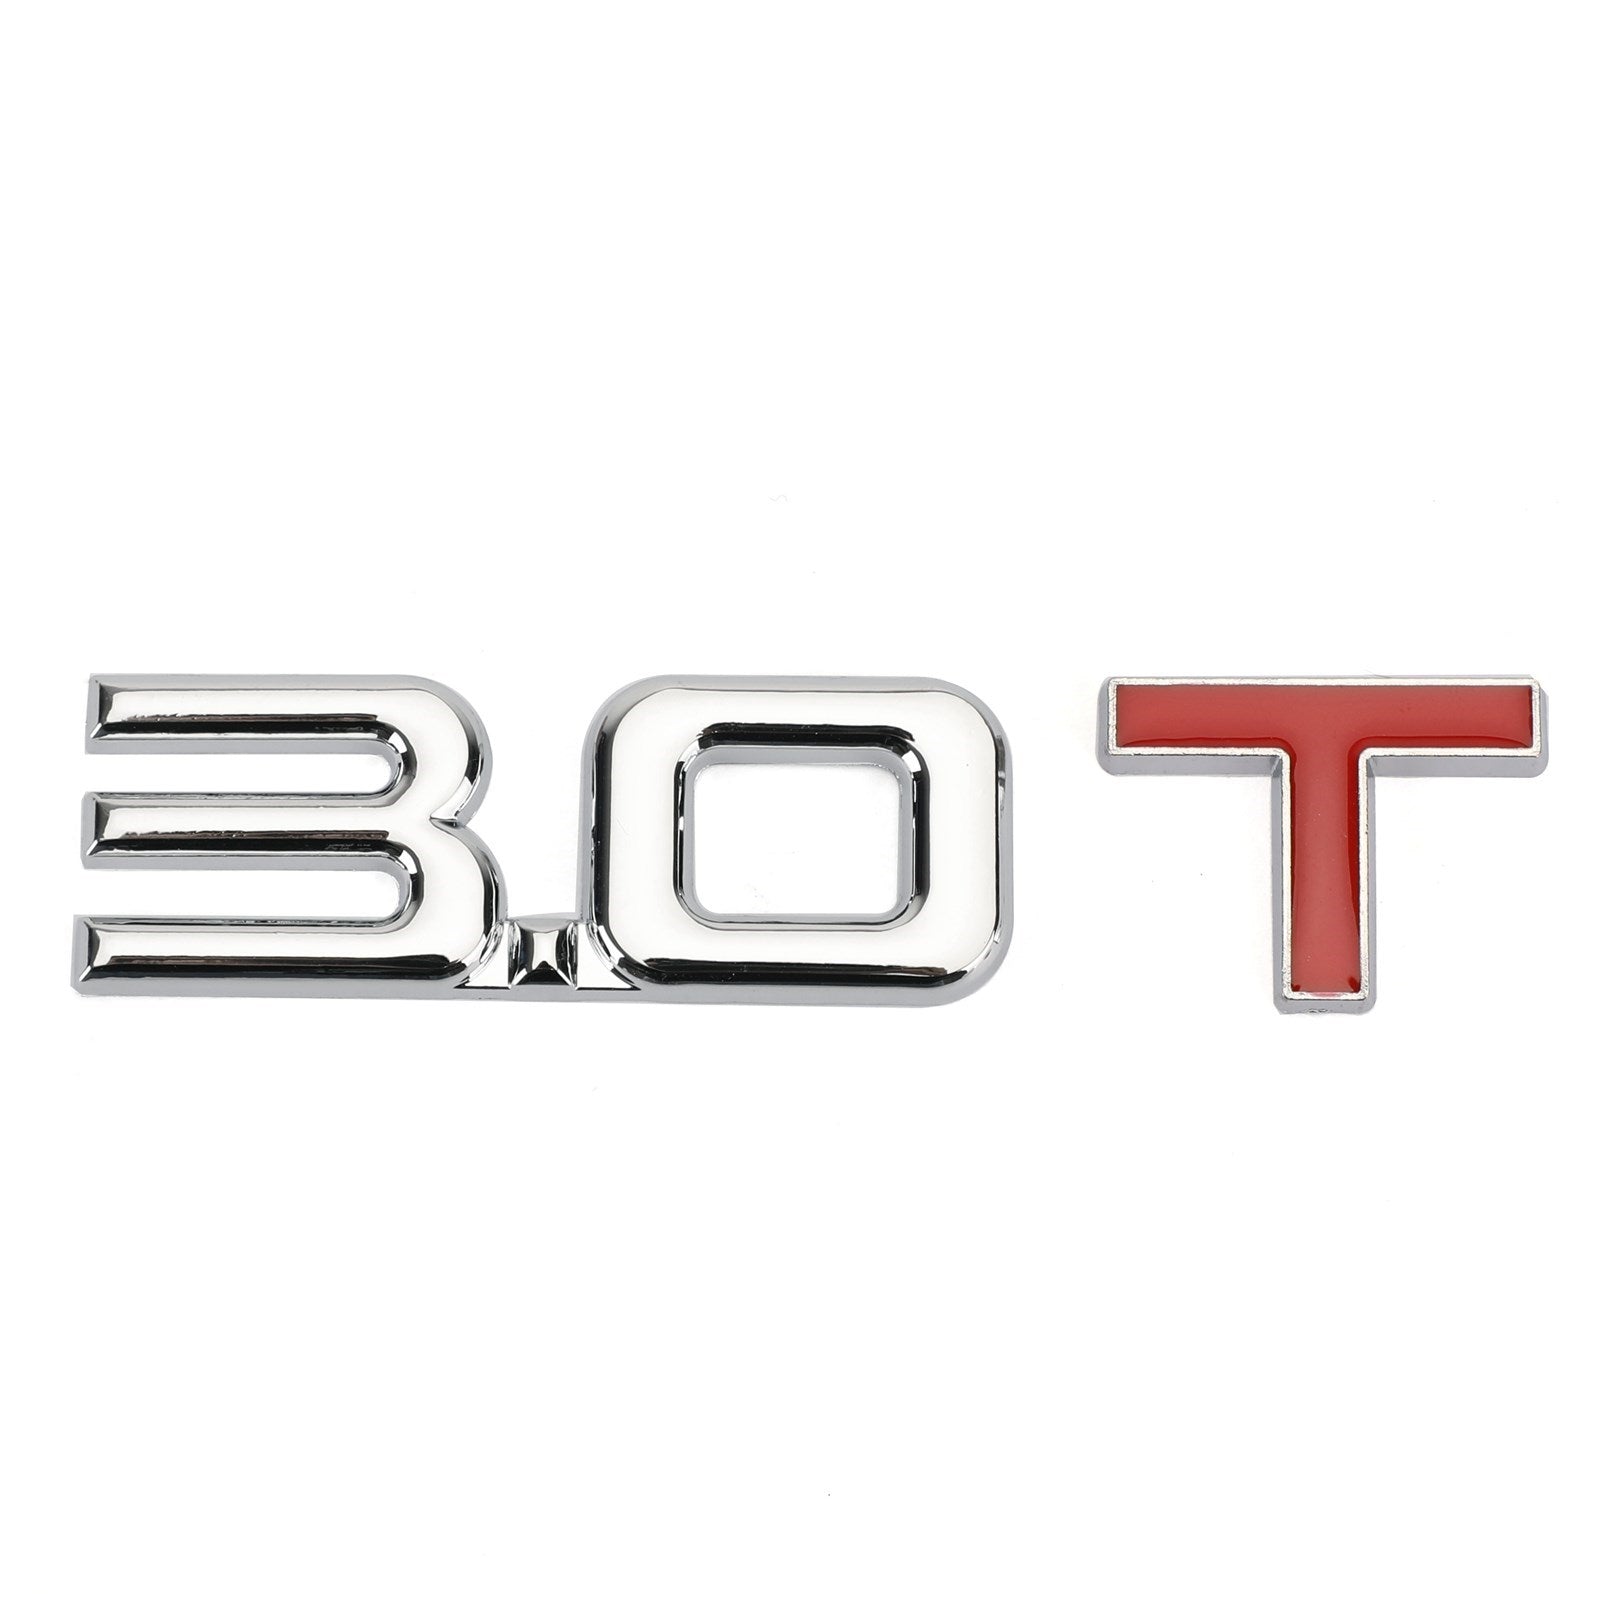 Autocollant d'insigne d'emblème en métal 3.0T 3D pour Audi A3 A4 A5 A6 A7 B6 B7 B8 Q3 Q5 Q7 TT générique